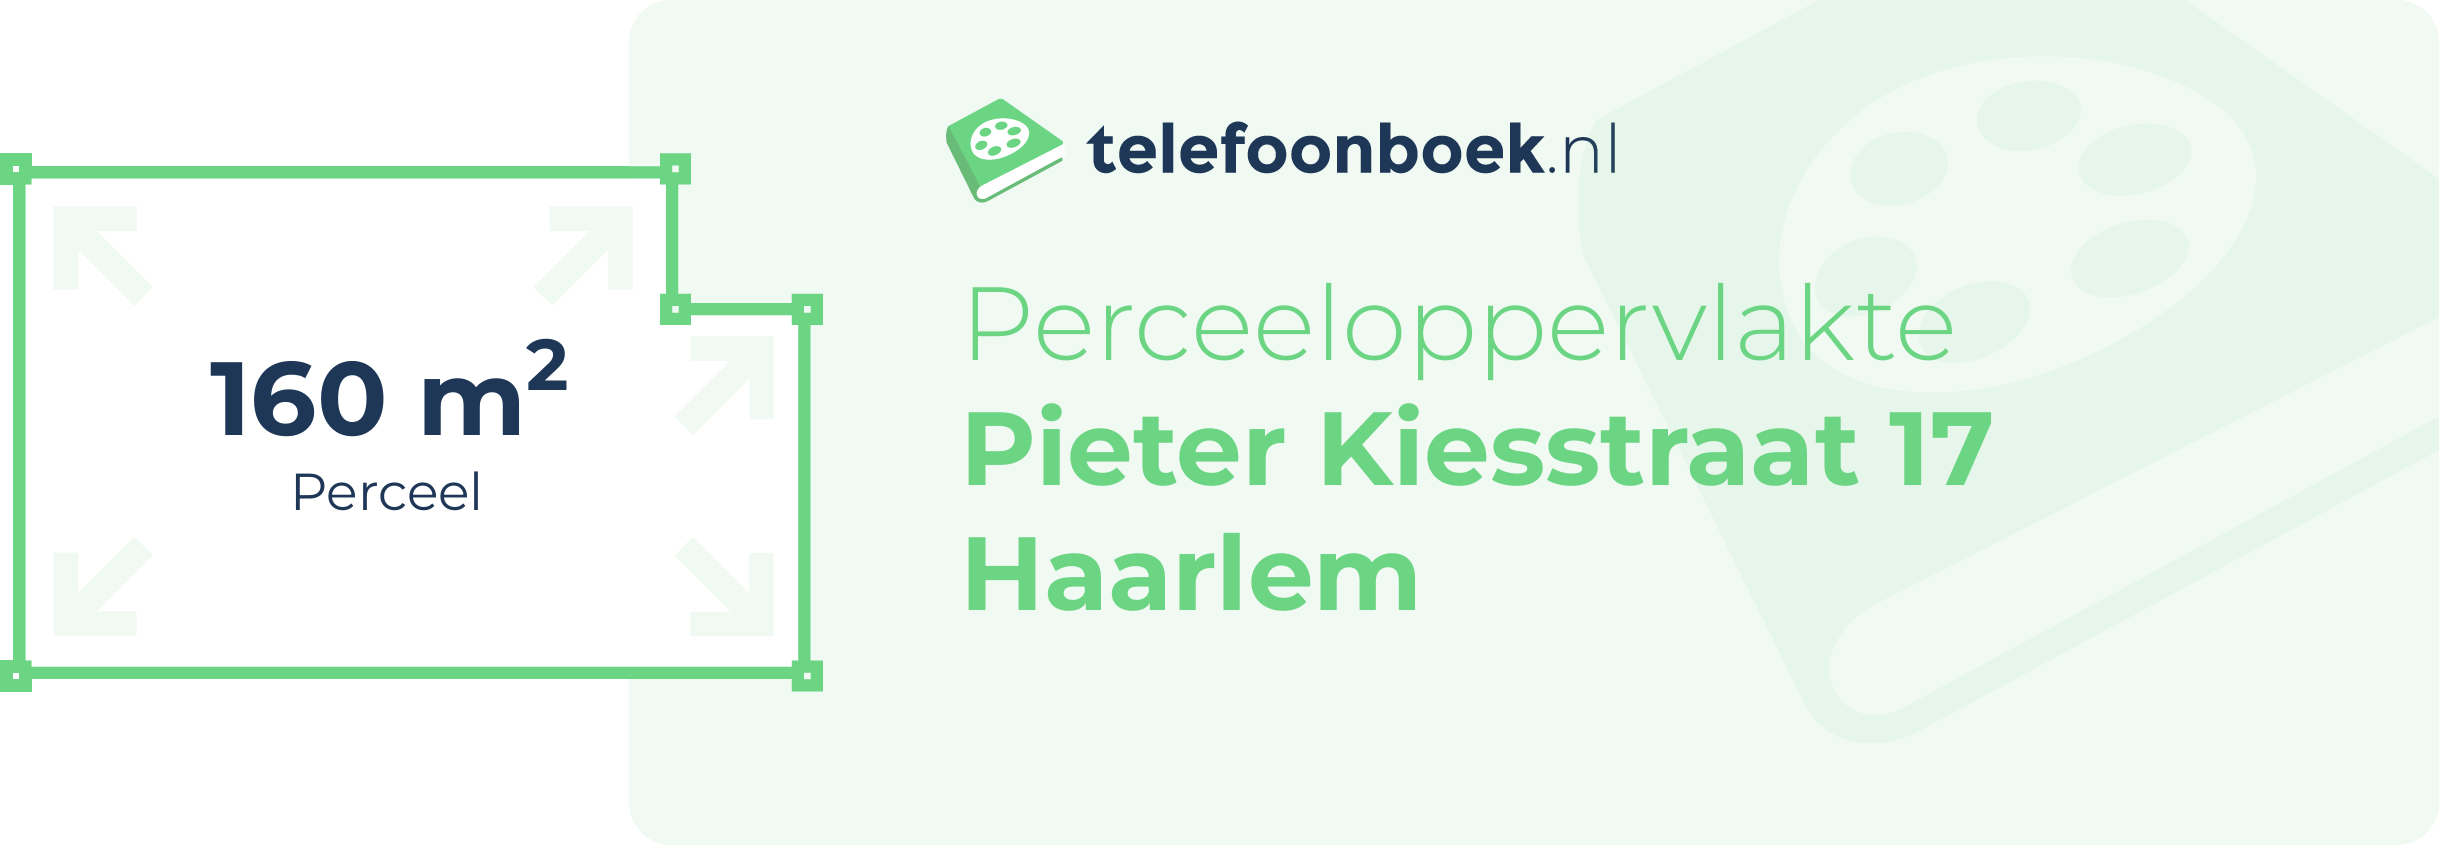 Perceeloppervlakte Pieter Kiesstraat 17 Haarlem